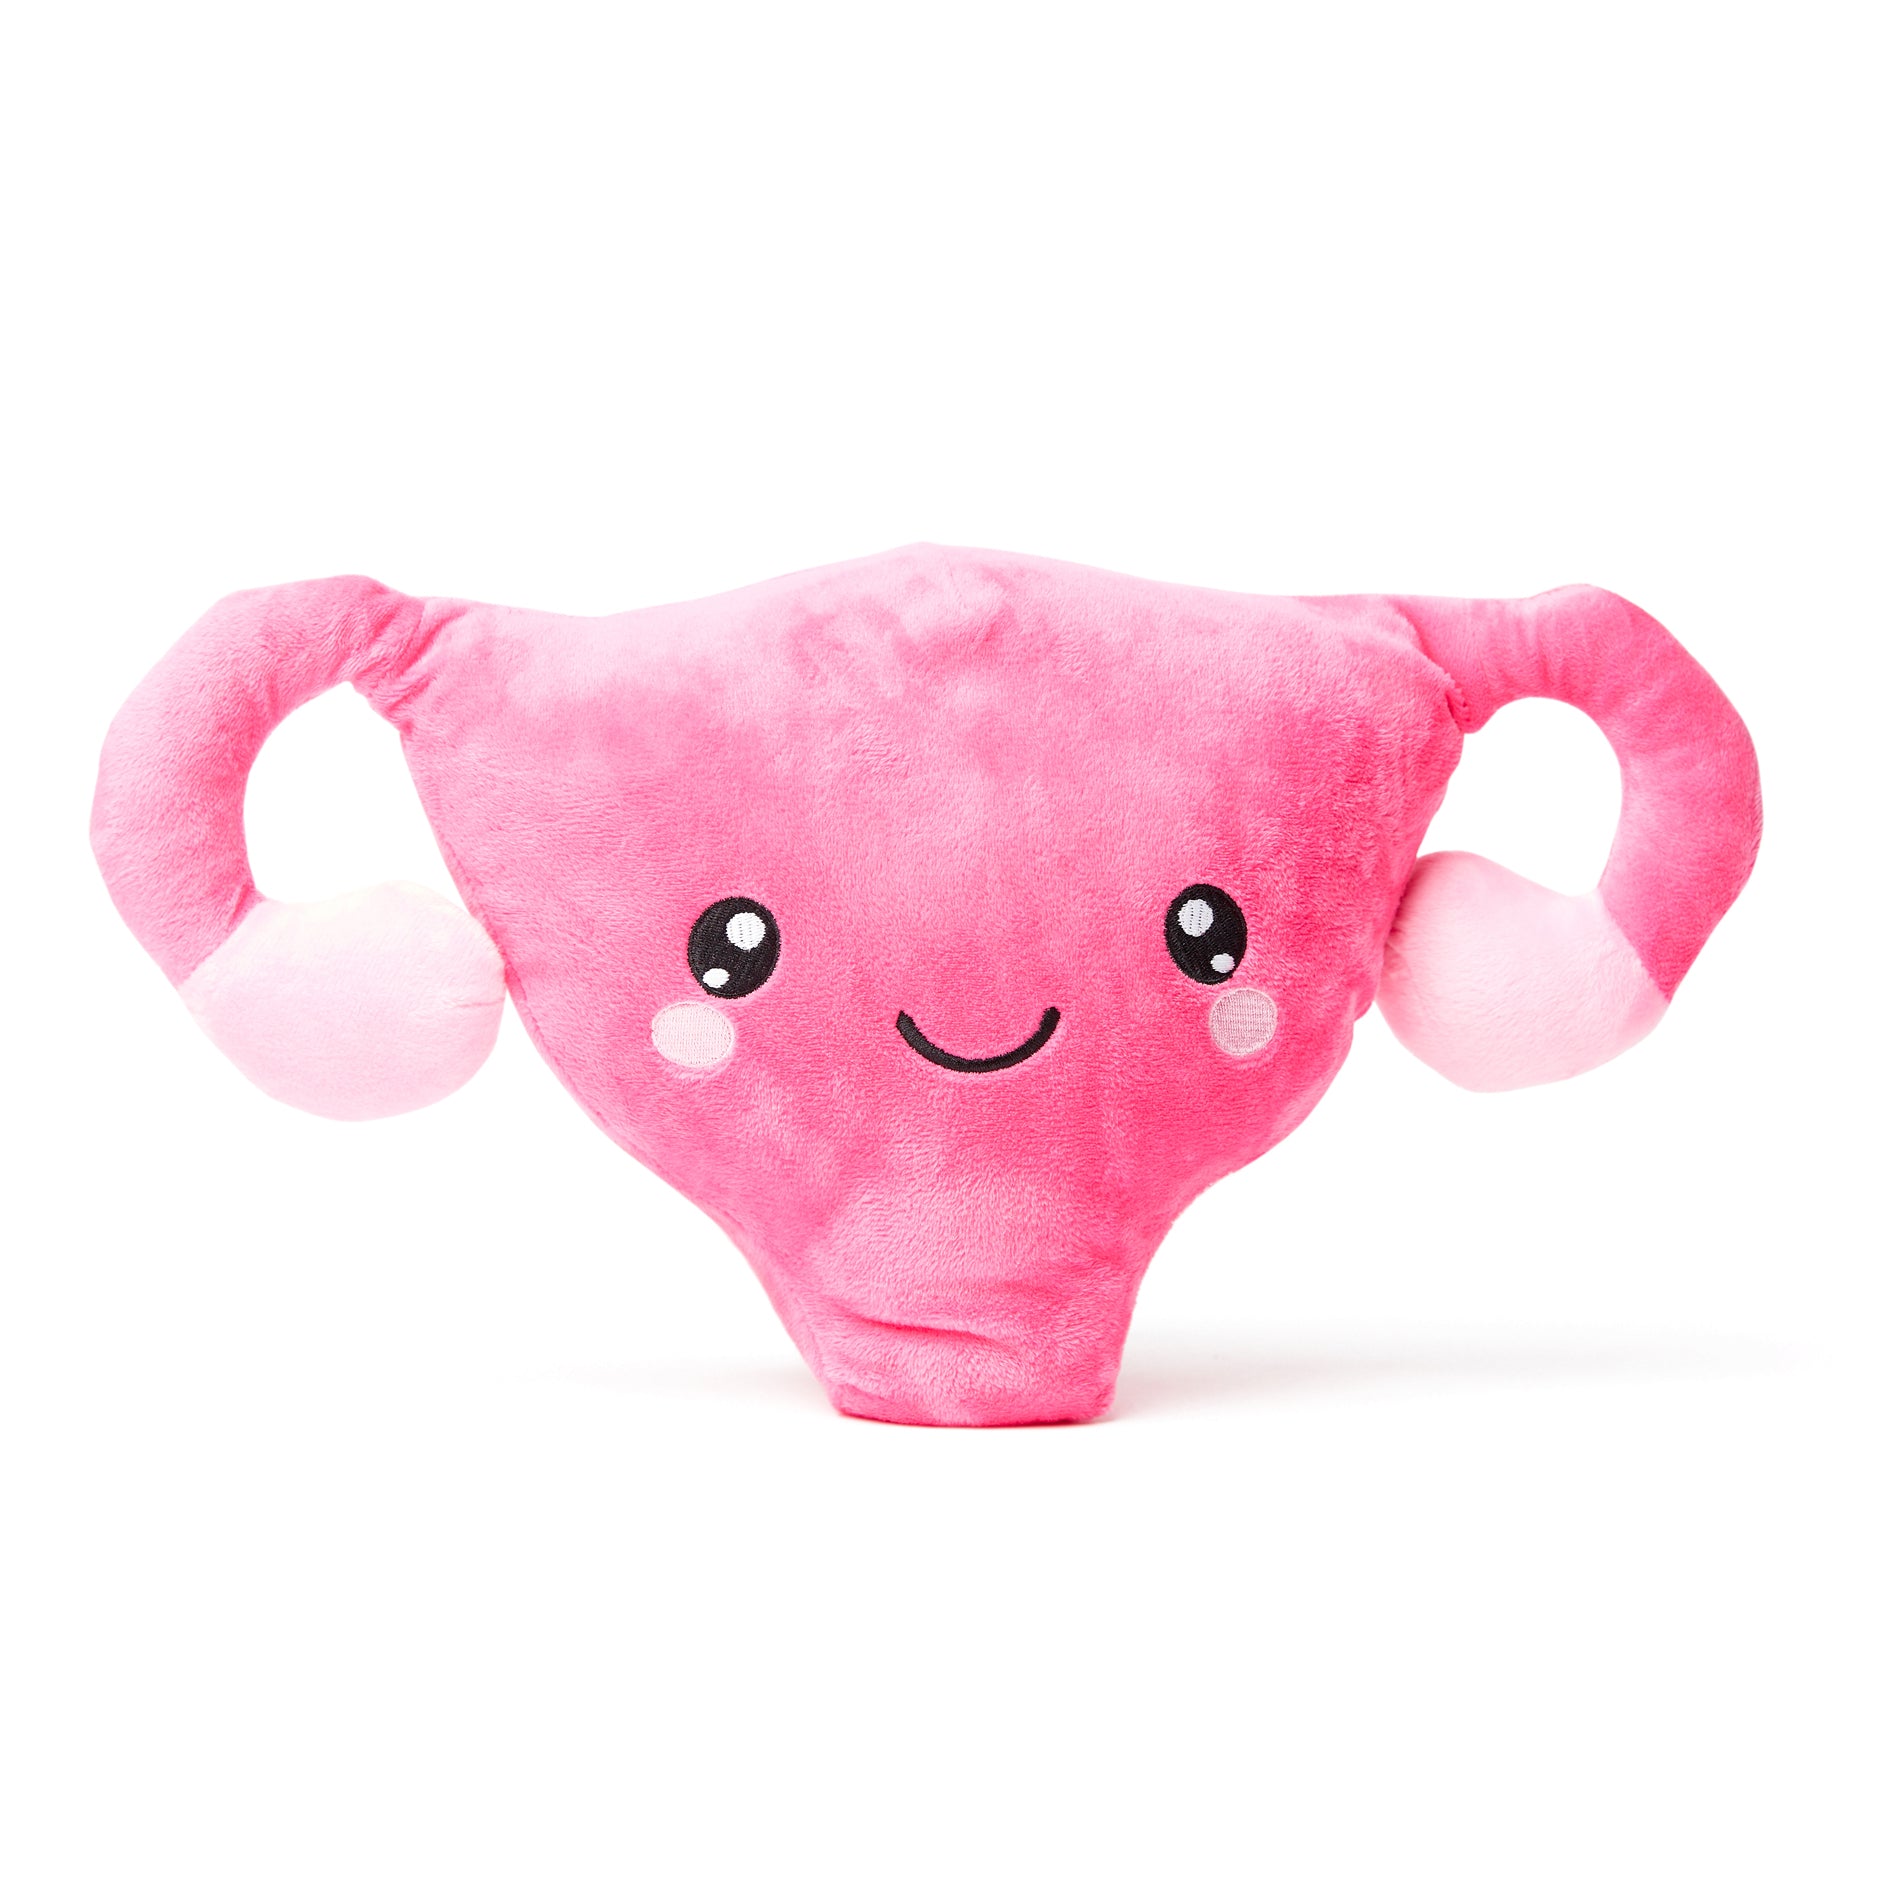 Uterus Plush Organ - Nerdbugs Uterus Plushie Organ - Who put the cuter us  in uterus?